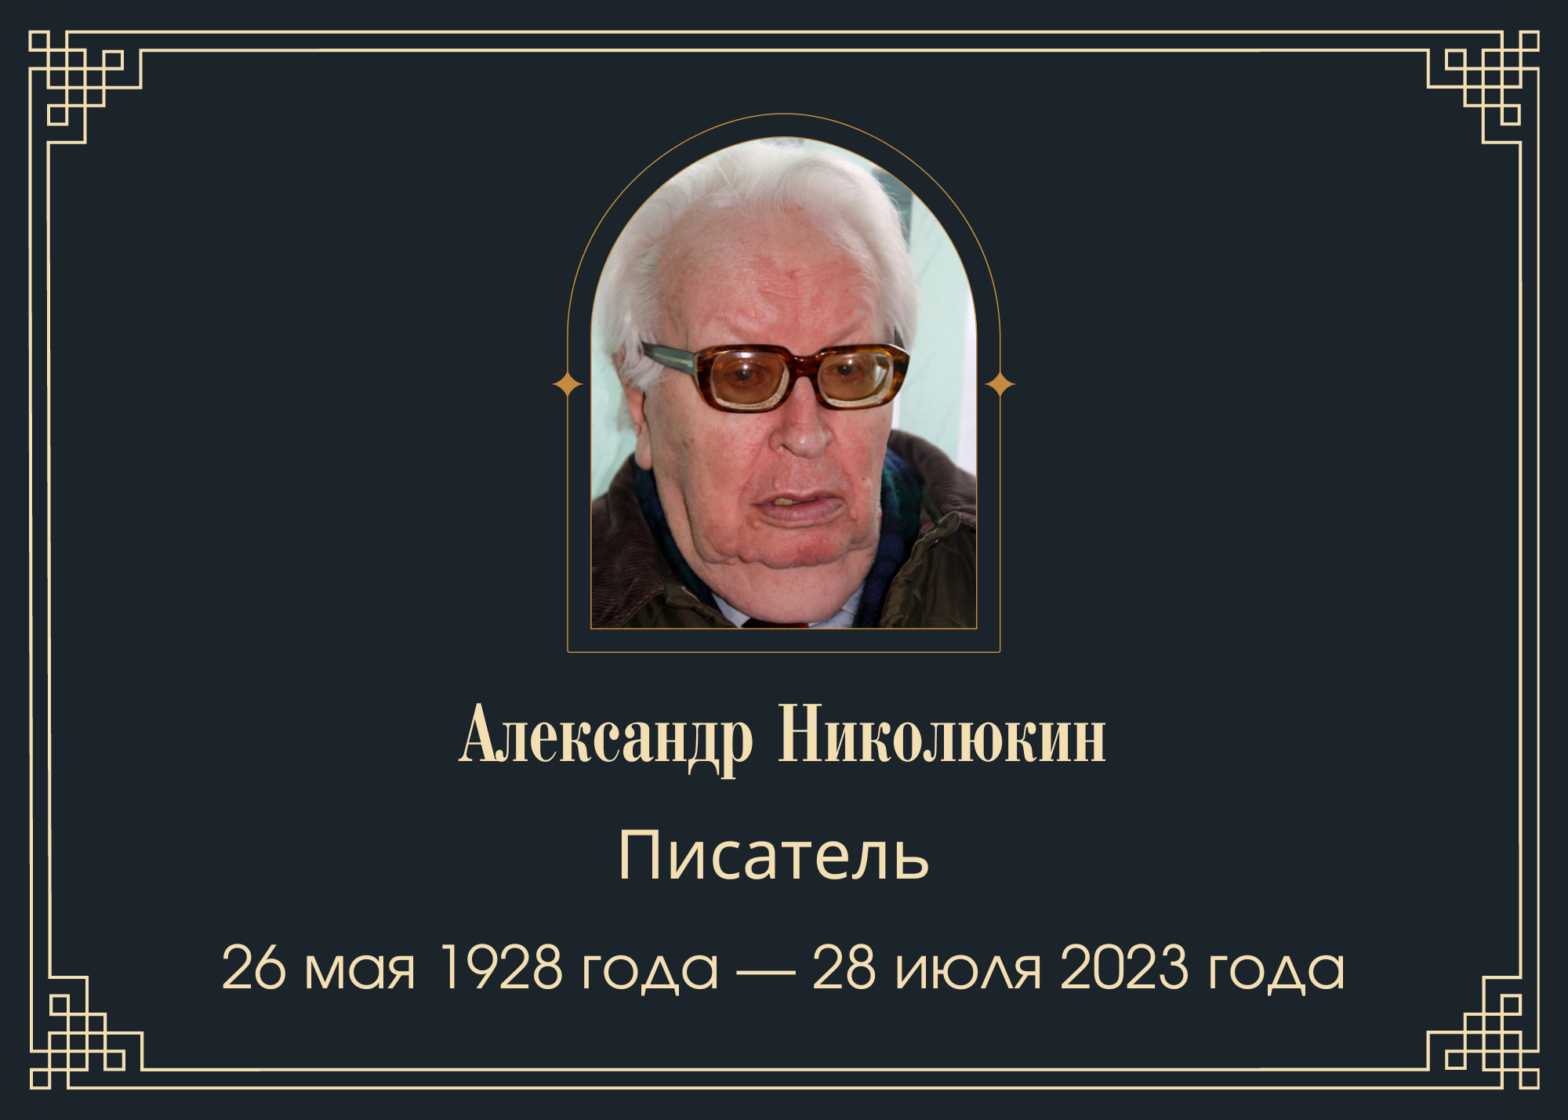 Умер писатель Александр Николюкин